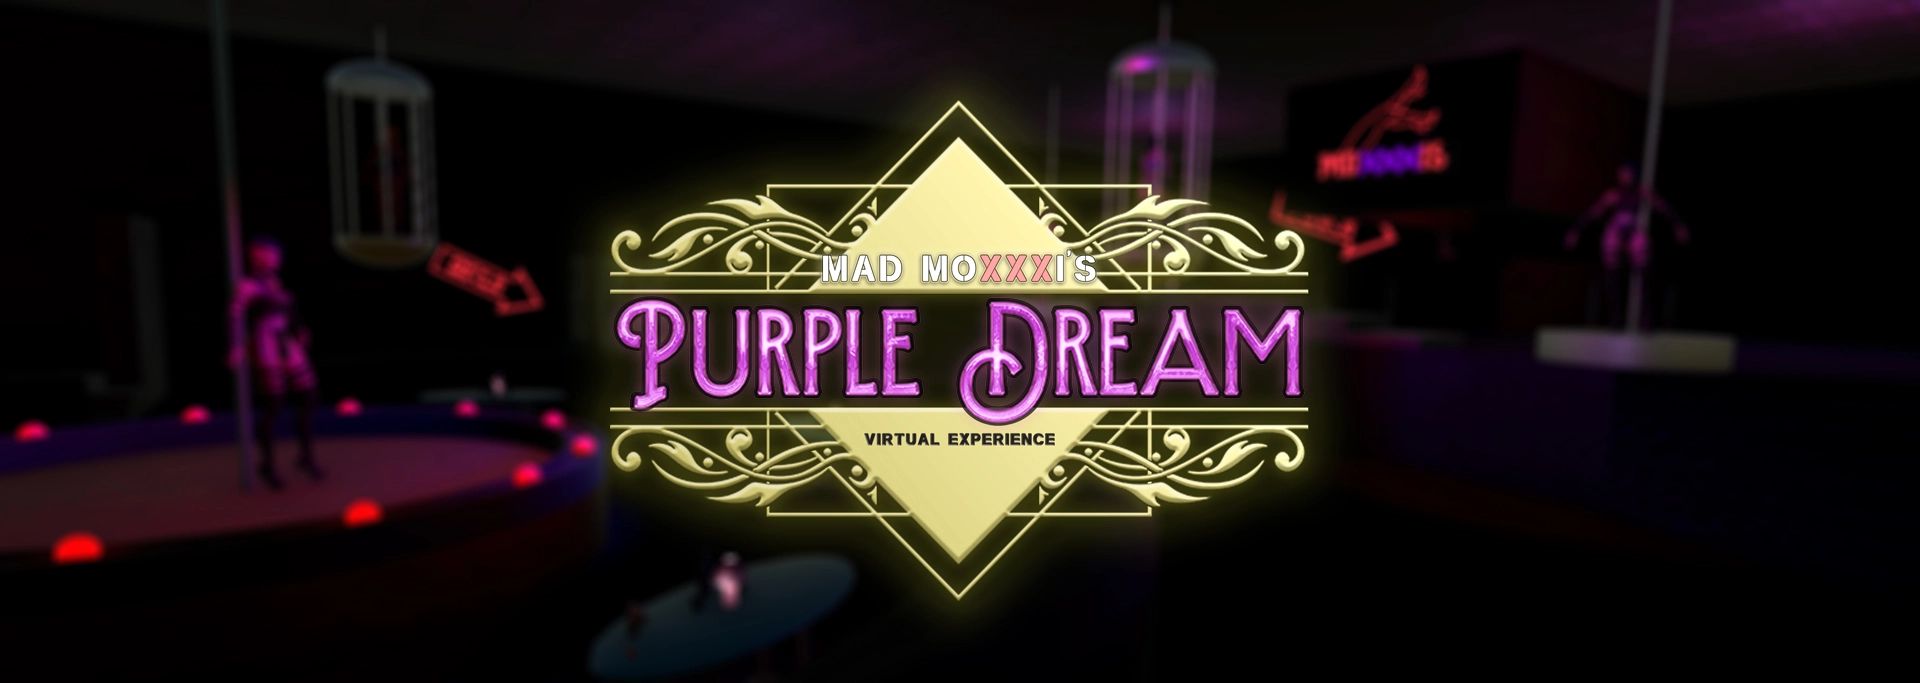 Mad Moxxi's Purple Dream VR main image